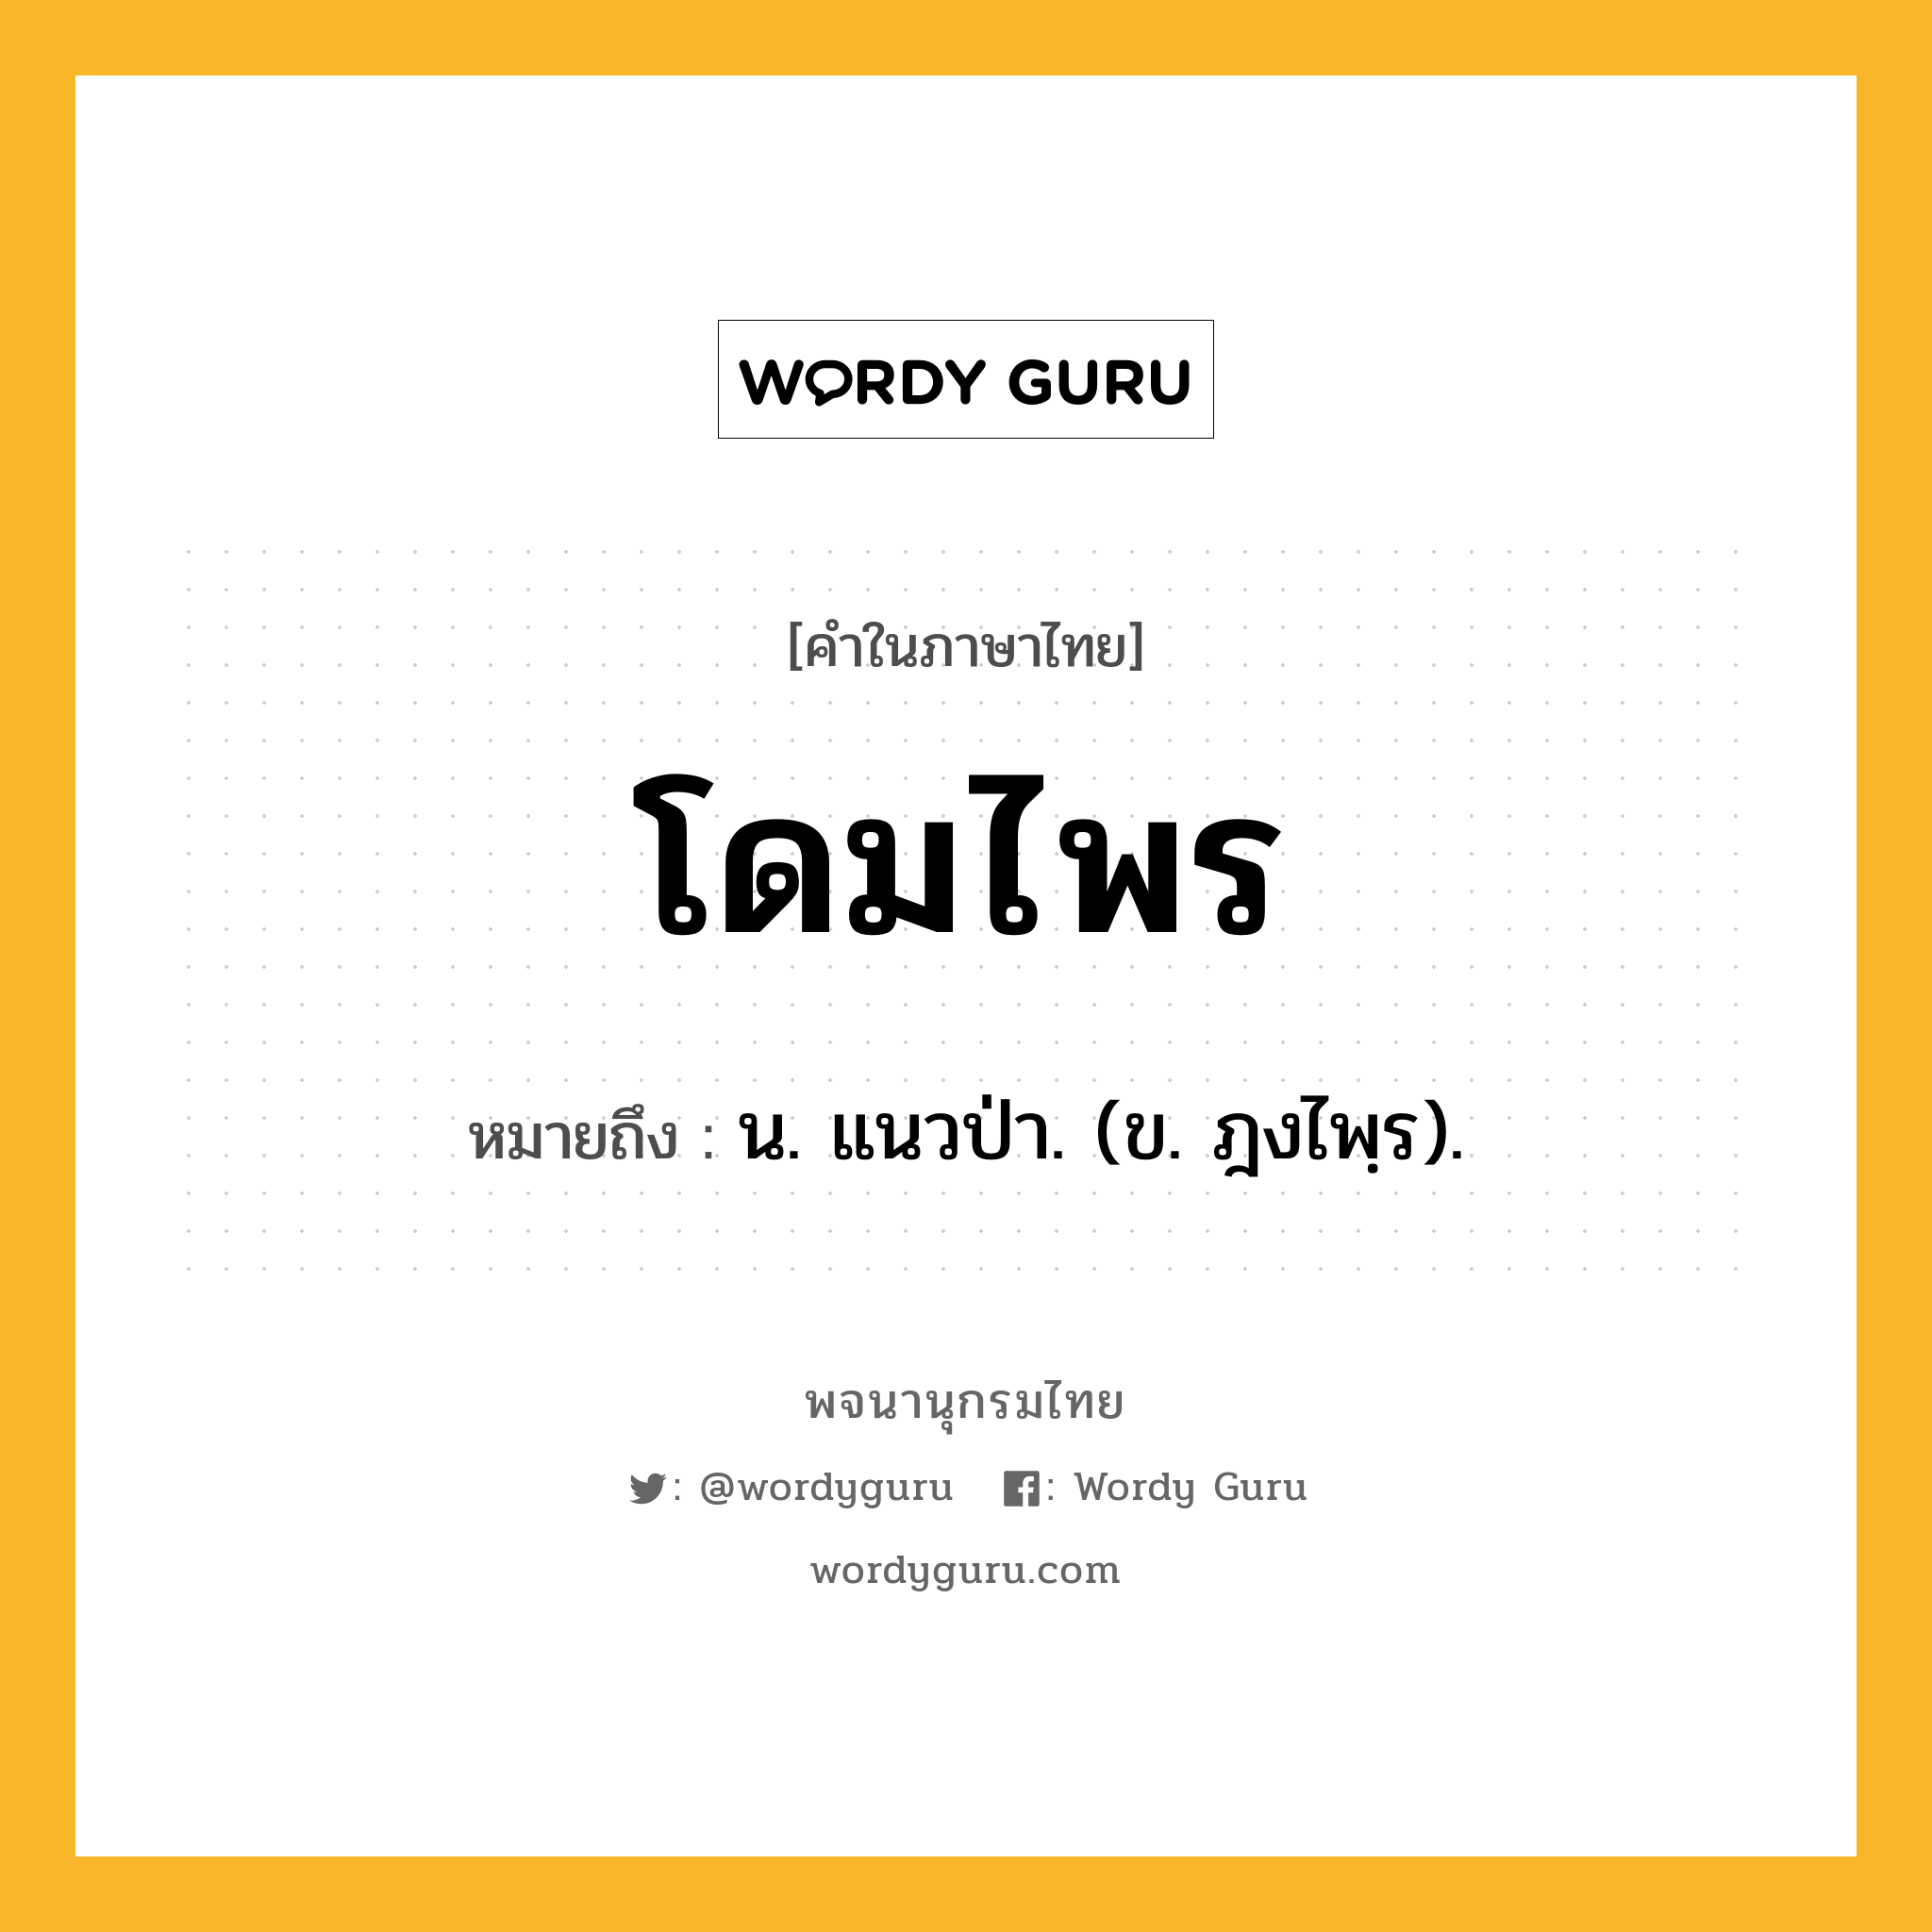 โดมไพร หมายถึงอะไร?, คำในภาษาไทย โดมไพร หมายถึง น. แนวป่า. (ข. ฎงไพฺร).